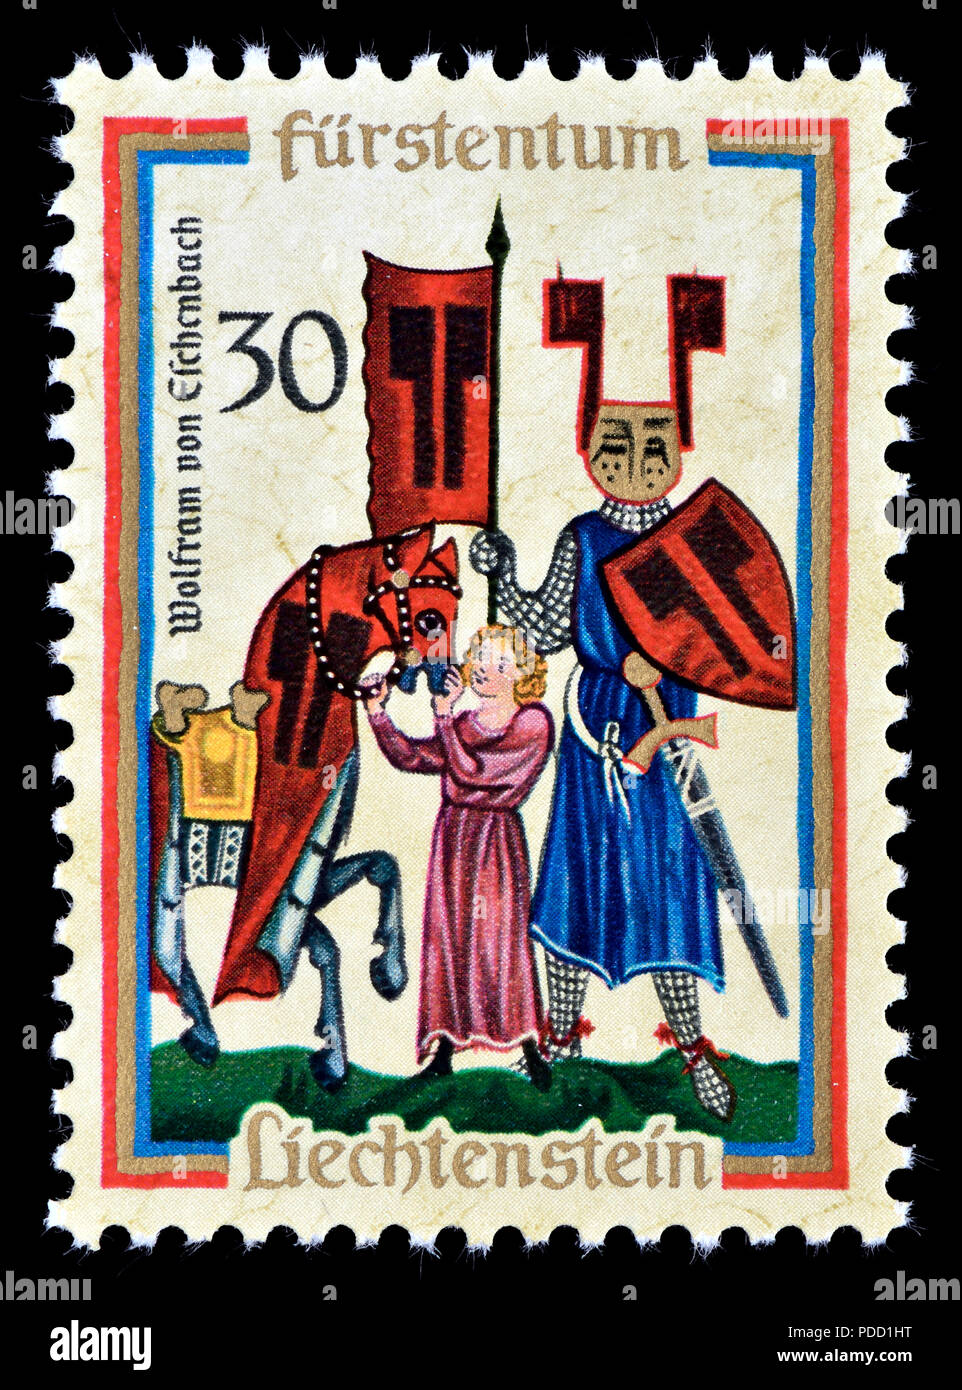 Il Liechtenstein francobollo (1970): ottocentesimo anniversario della nascita di Wolfram von Eschenbach (c.1170 - c.1220) Cavaliere tedesco, poeta epico e Minnesinge Foto Stock